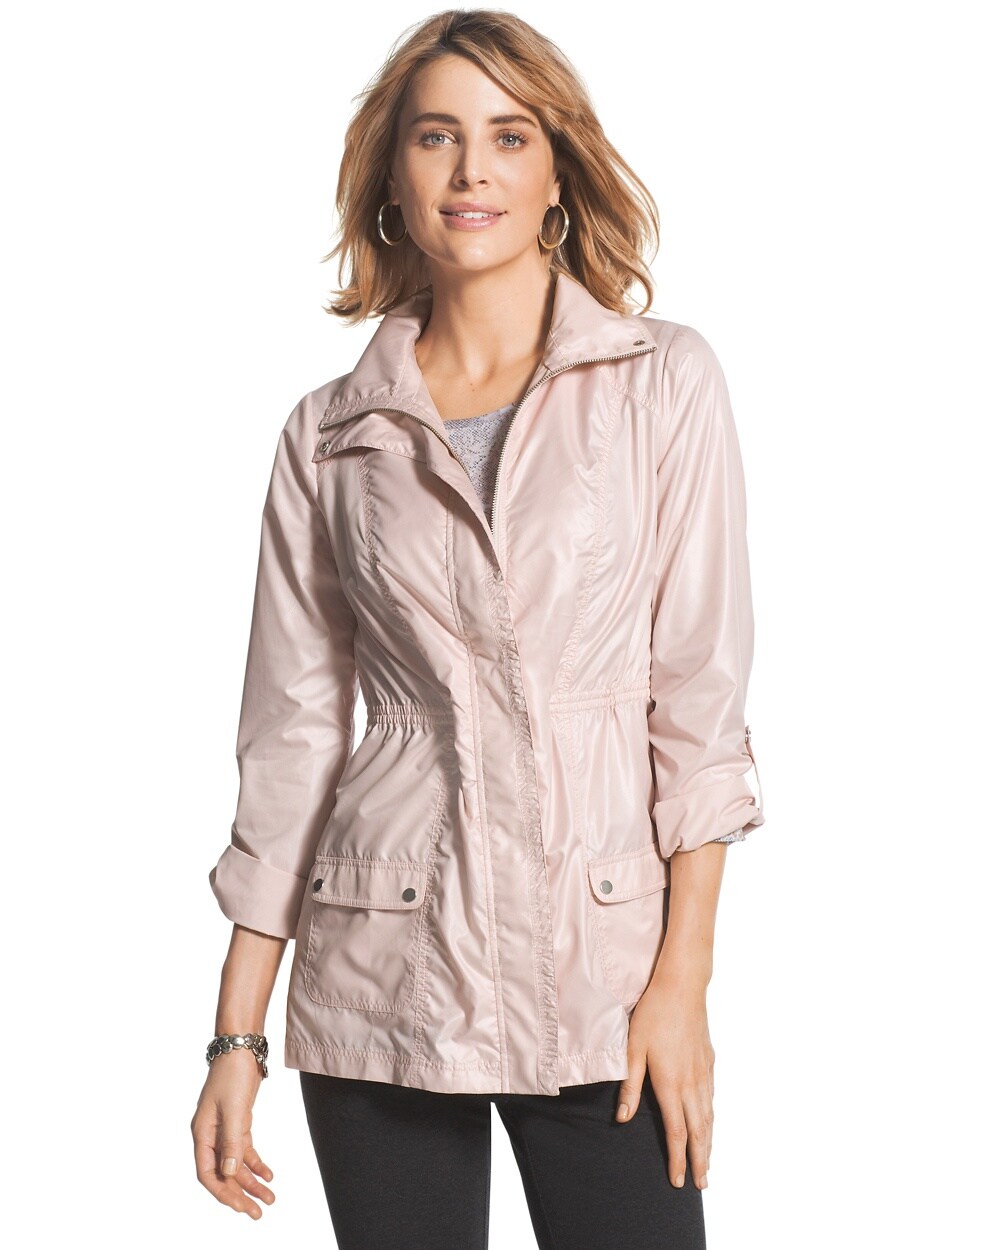 Zenergy Colleen Pink Jacket